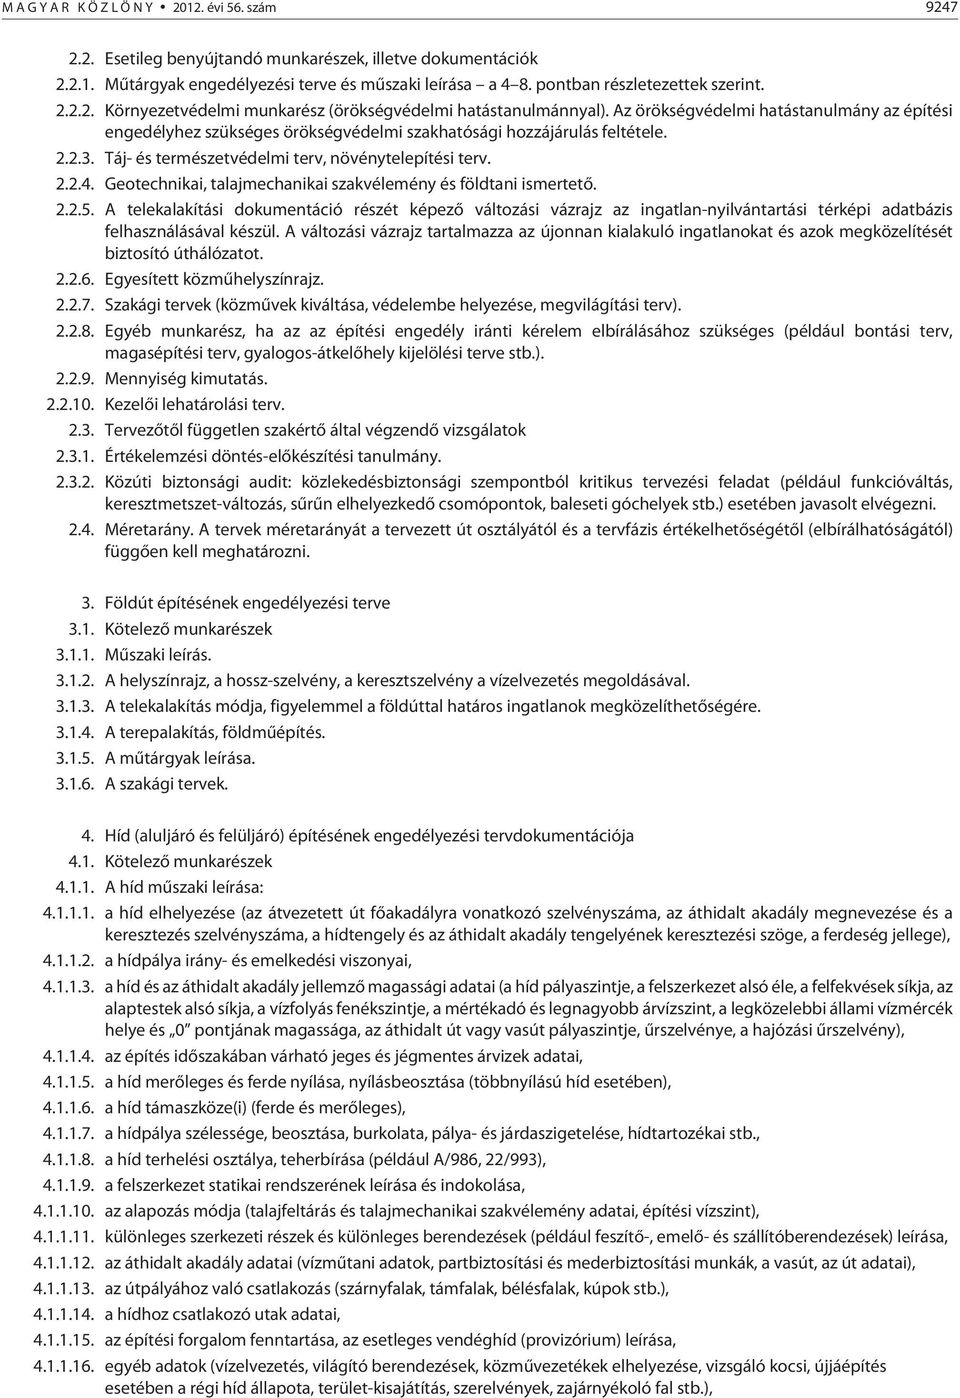 Geotechnikai, talajmechanikai szakvélemény és földtani ismertetõ. 2.2.5.